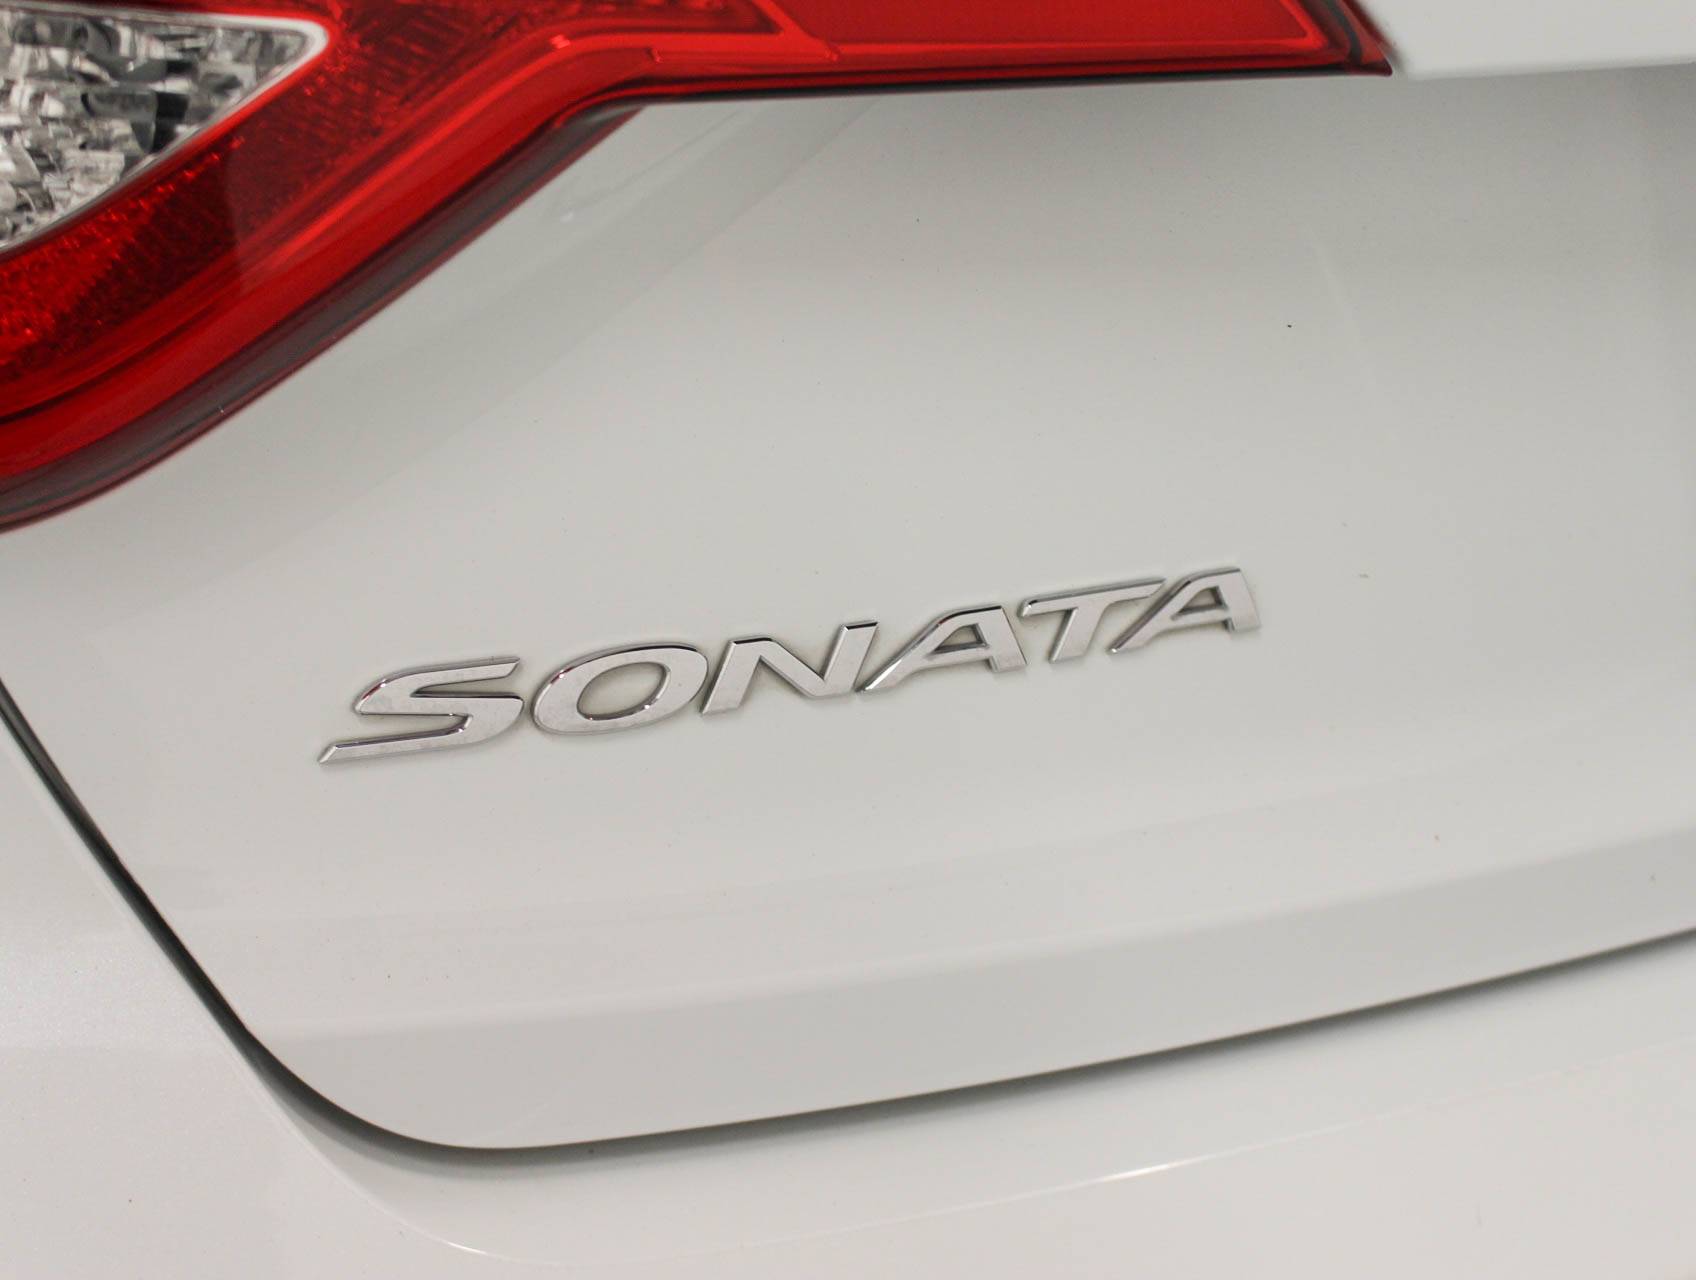 Florida Fine Cars - Used HYUNDAI SONATA 2017 MARGATE SE